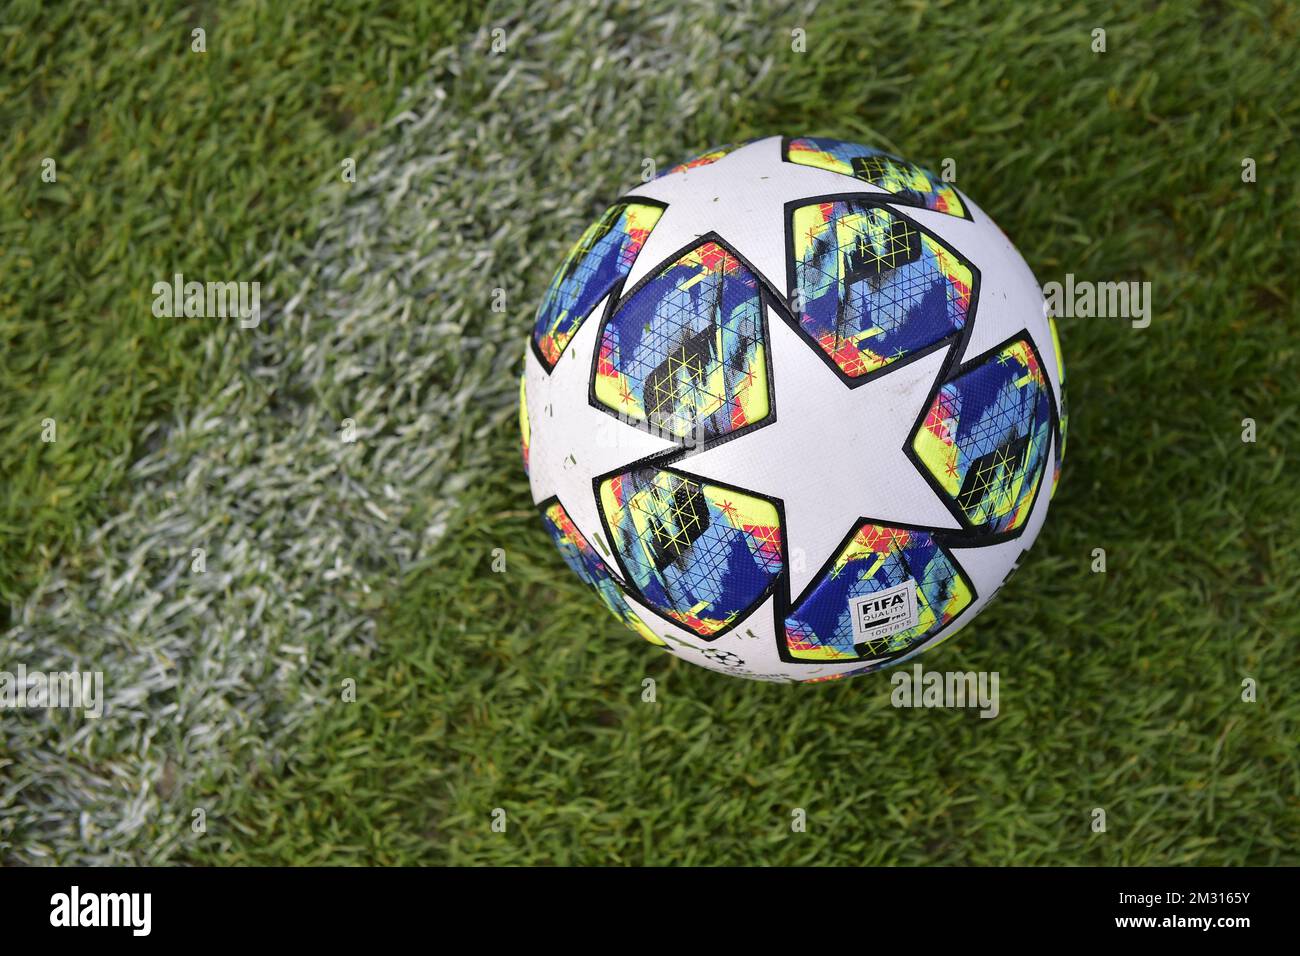 Incorporar clon Inactividad La ilustración muestra el balón oficial de la Liga de Campeones Adidas  Finale 19 durante una sesión de entrenamiento del equipo belga de fútbol  KRC Genk, martes 22 de octubre de 2019